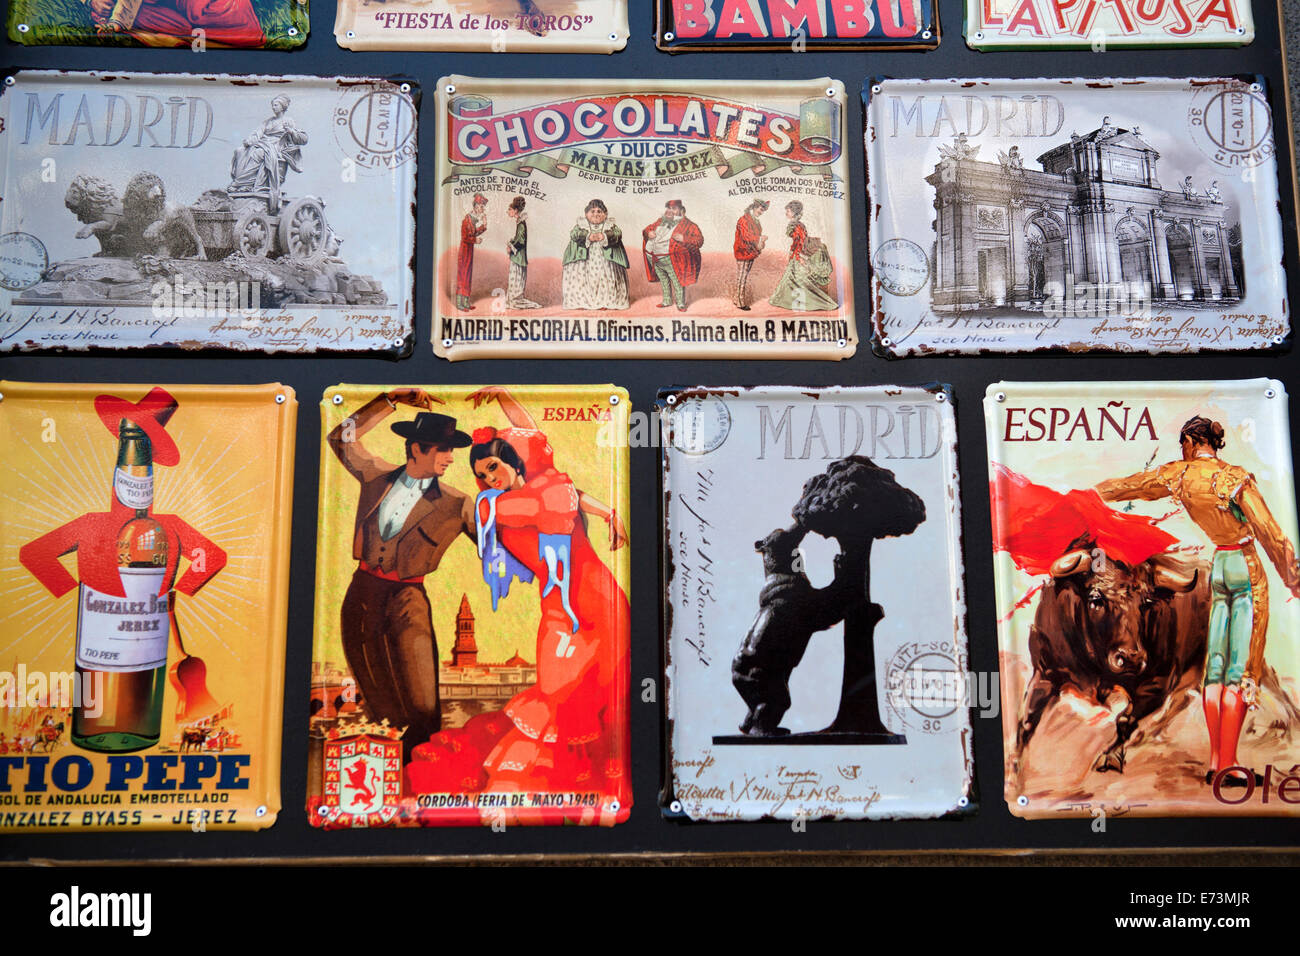 Spain, Madrid, Souvenir enamal plaques. Stock Photo